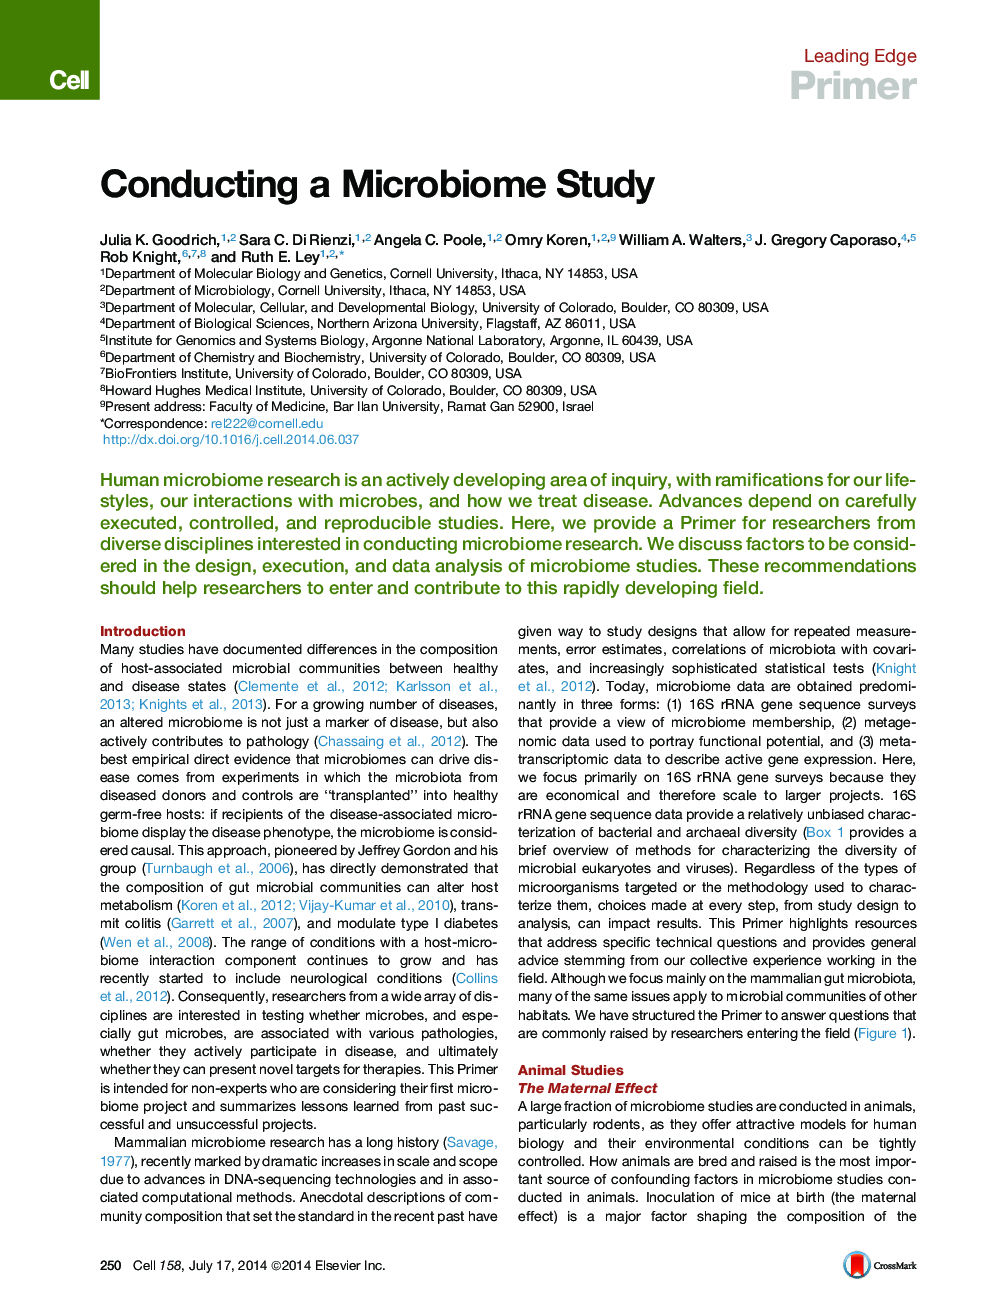 انجام یک مطالعه میکروبیومی 